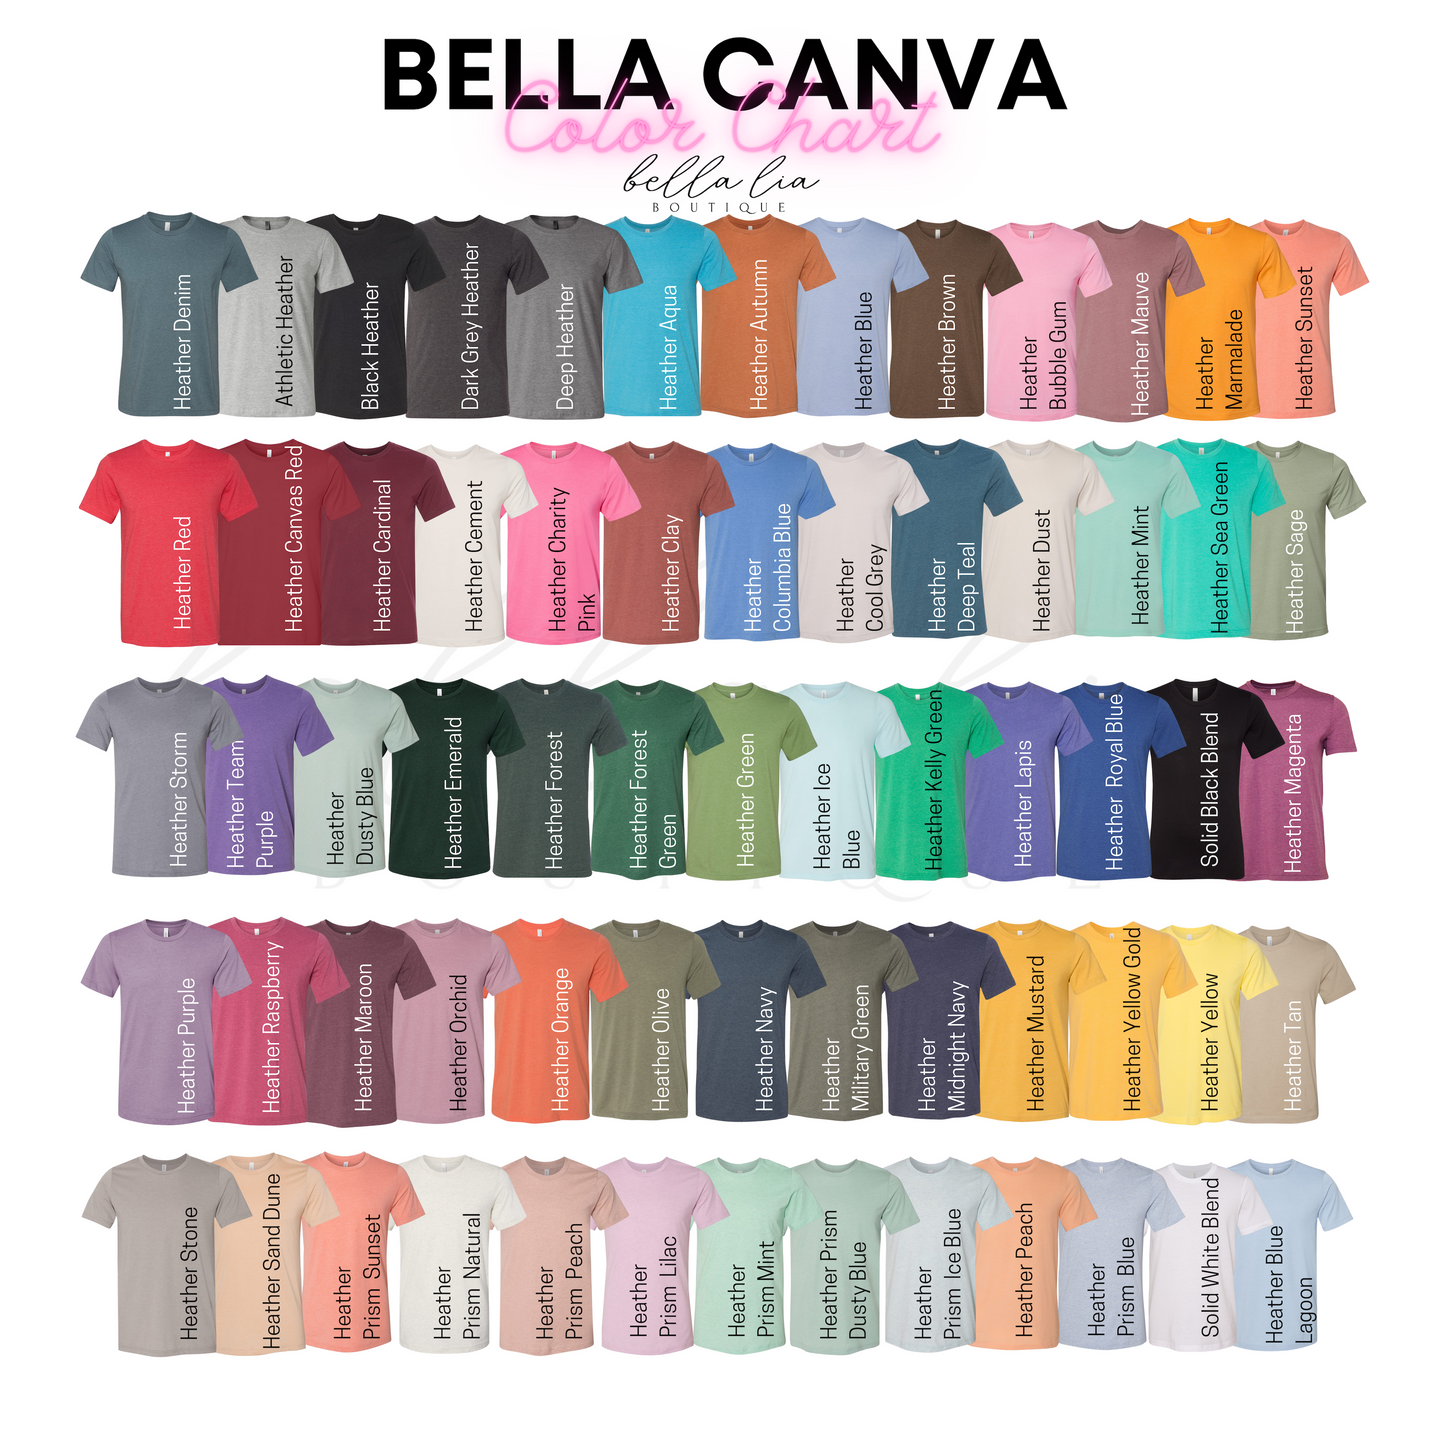 Winter Coffee Sloth Graphic Sweater - Bella Lia Boutique